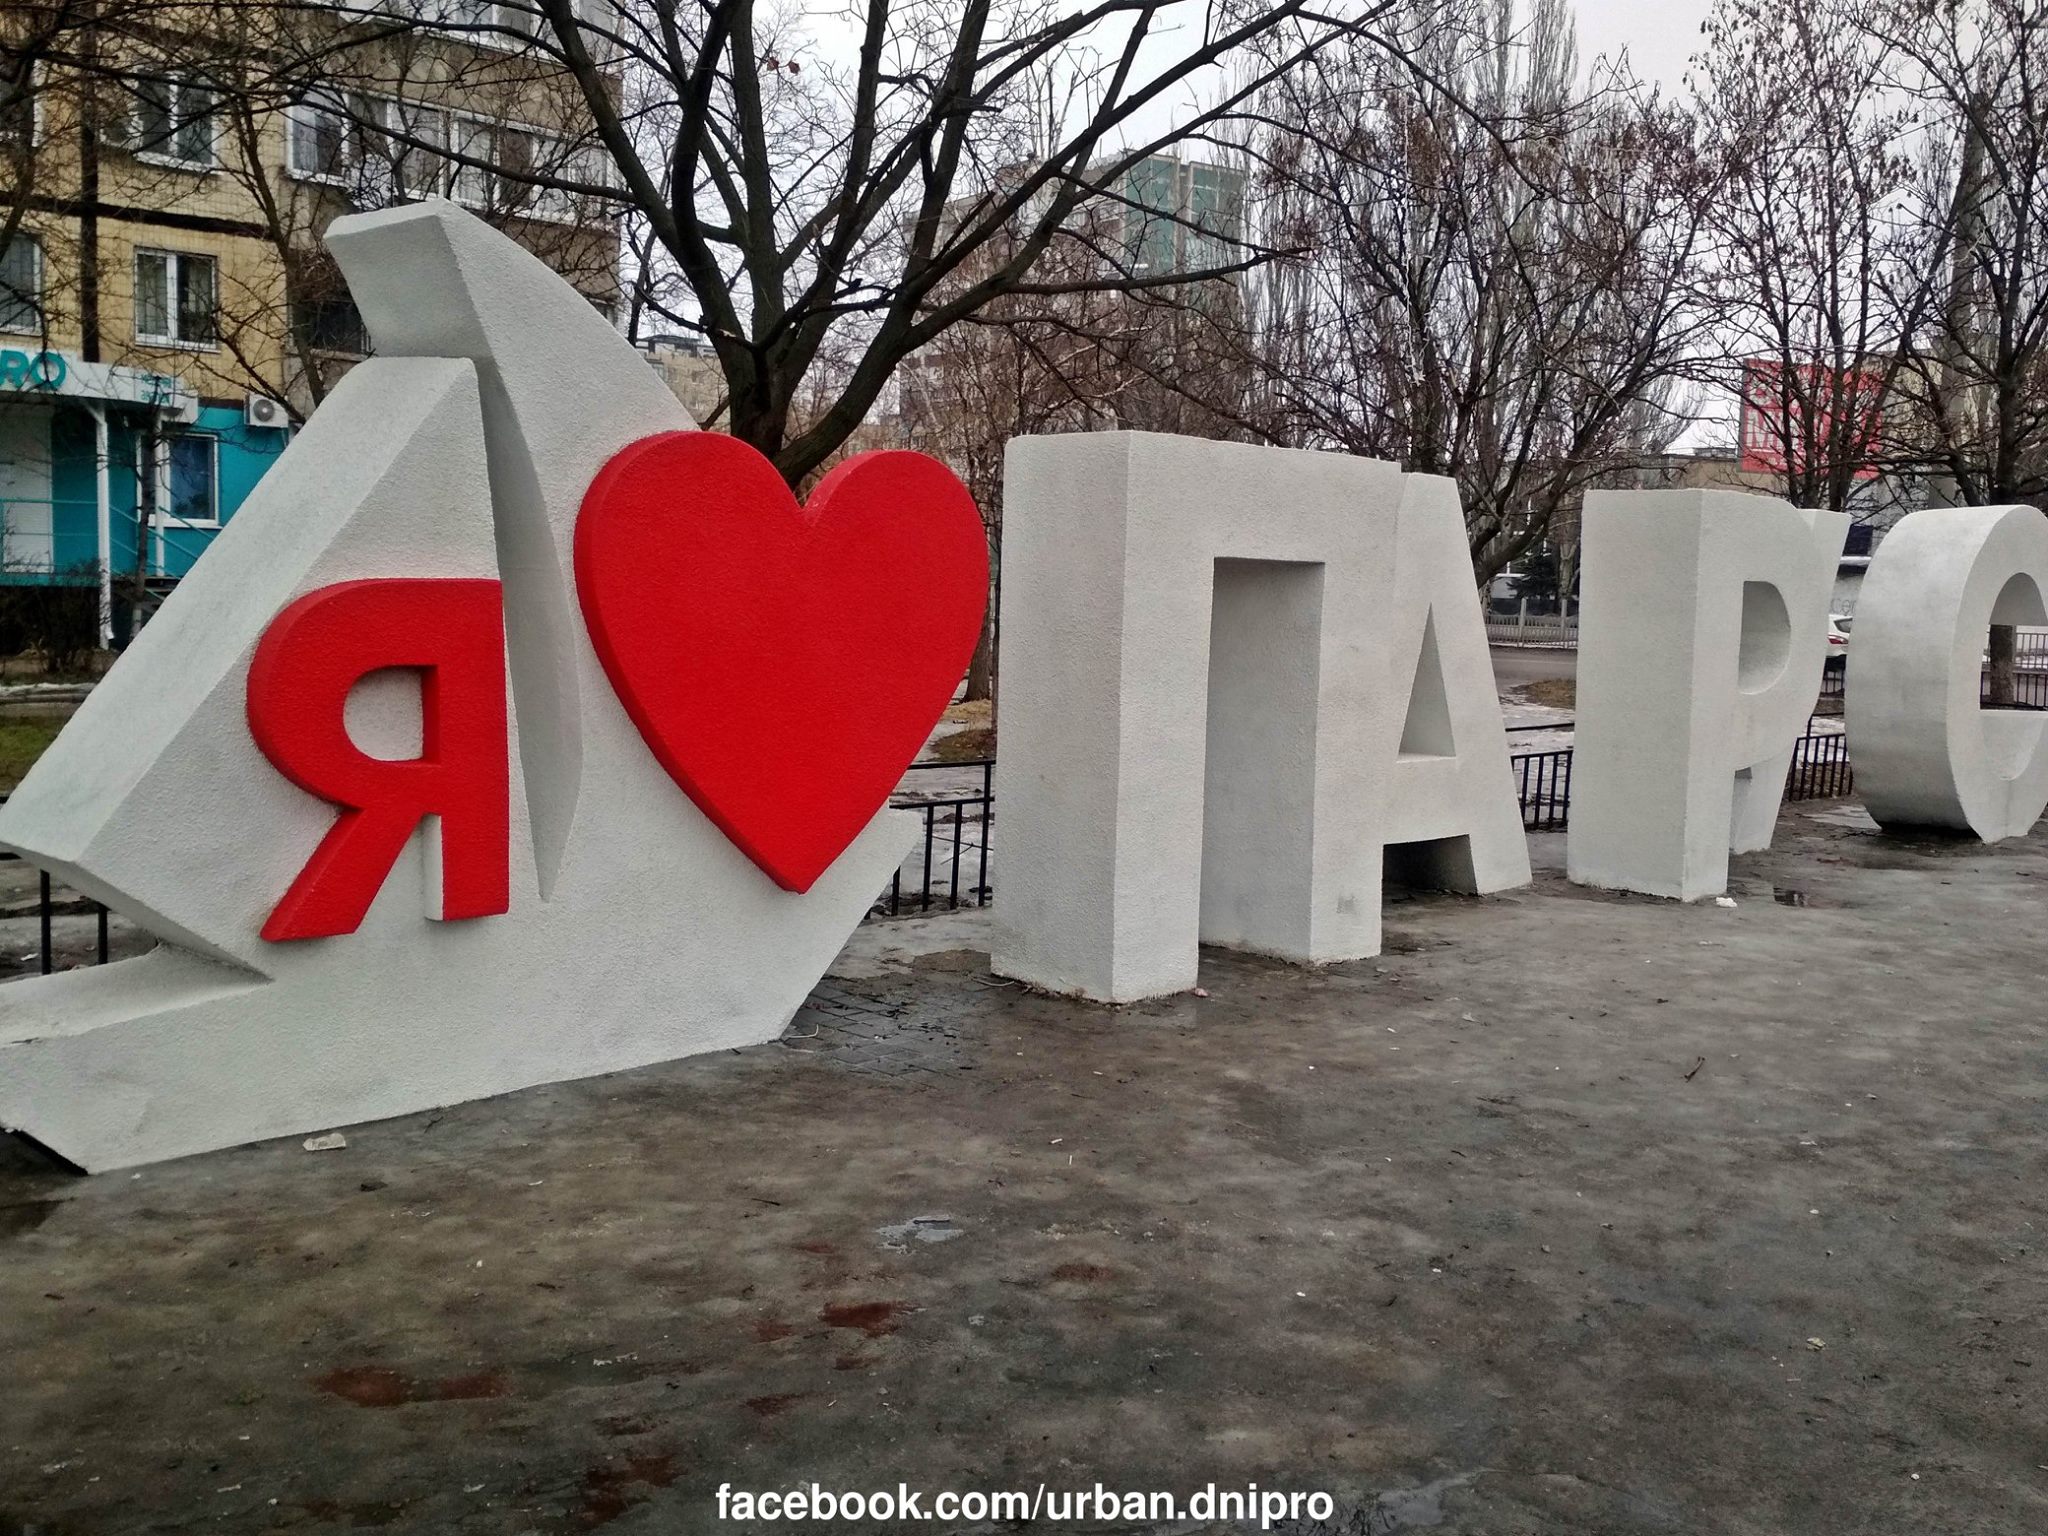 На жилмассиве Парус появилась надпись в стиле инсталляции "I'am'sterdam". Фото: Urban Dnipro.